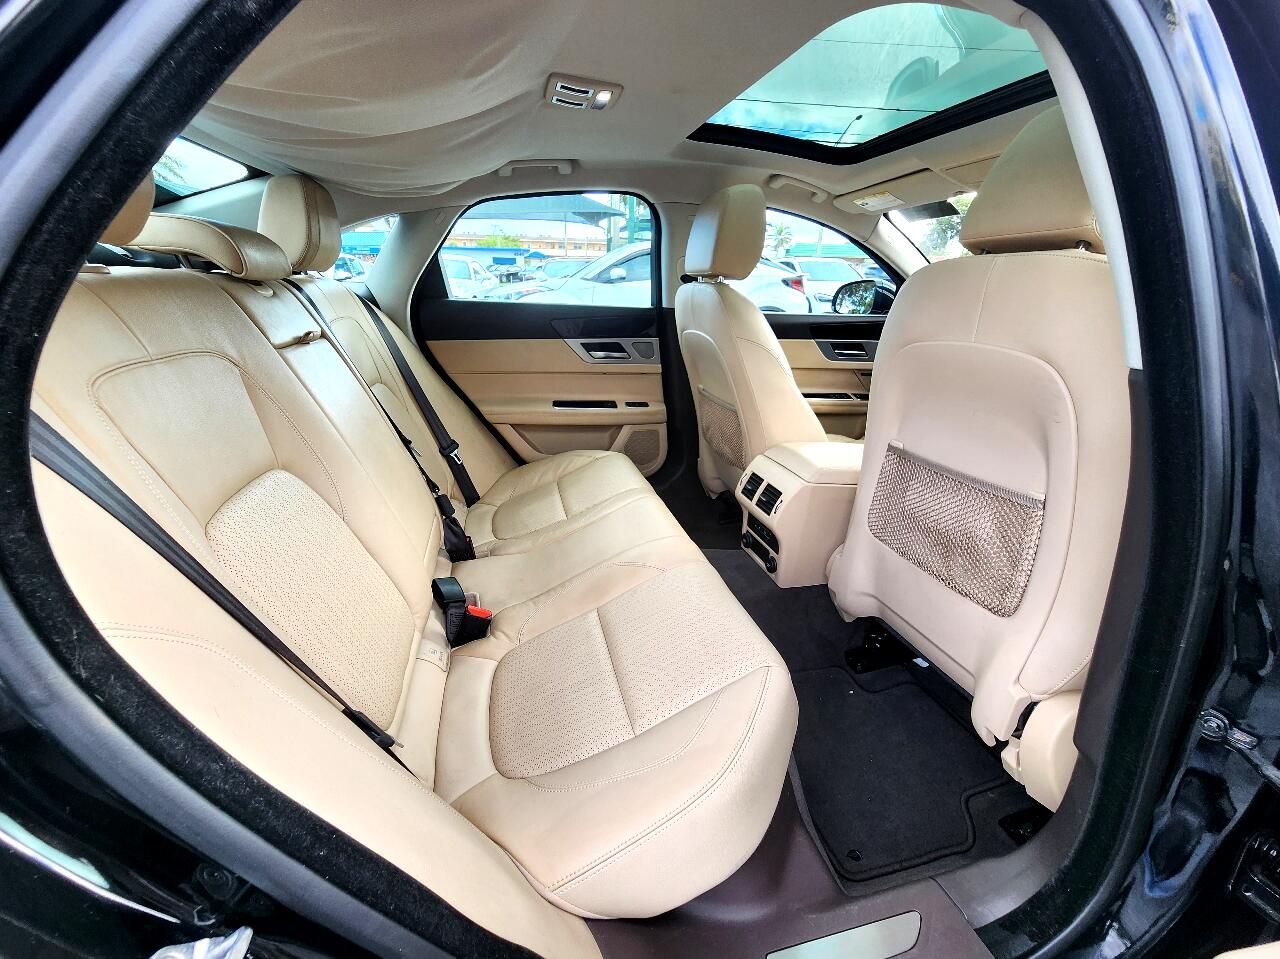 2016 JAGUAR XF Sedan - $18,999